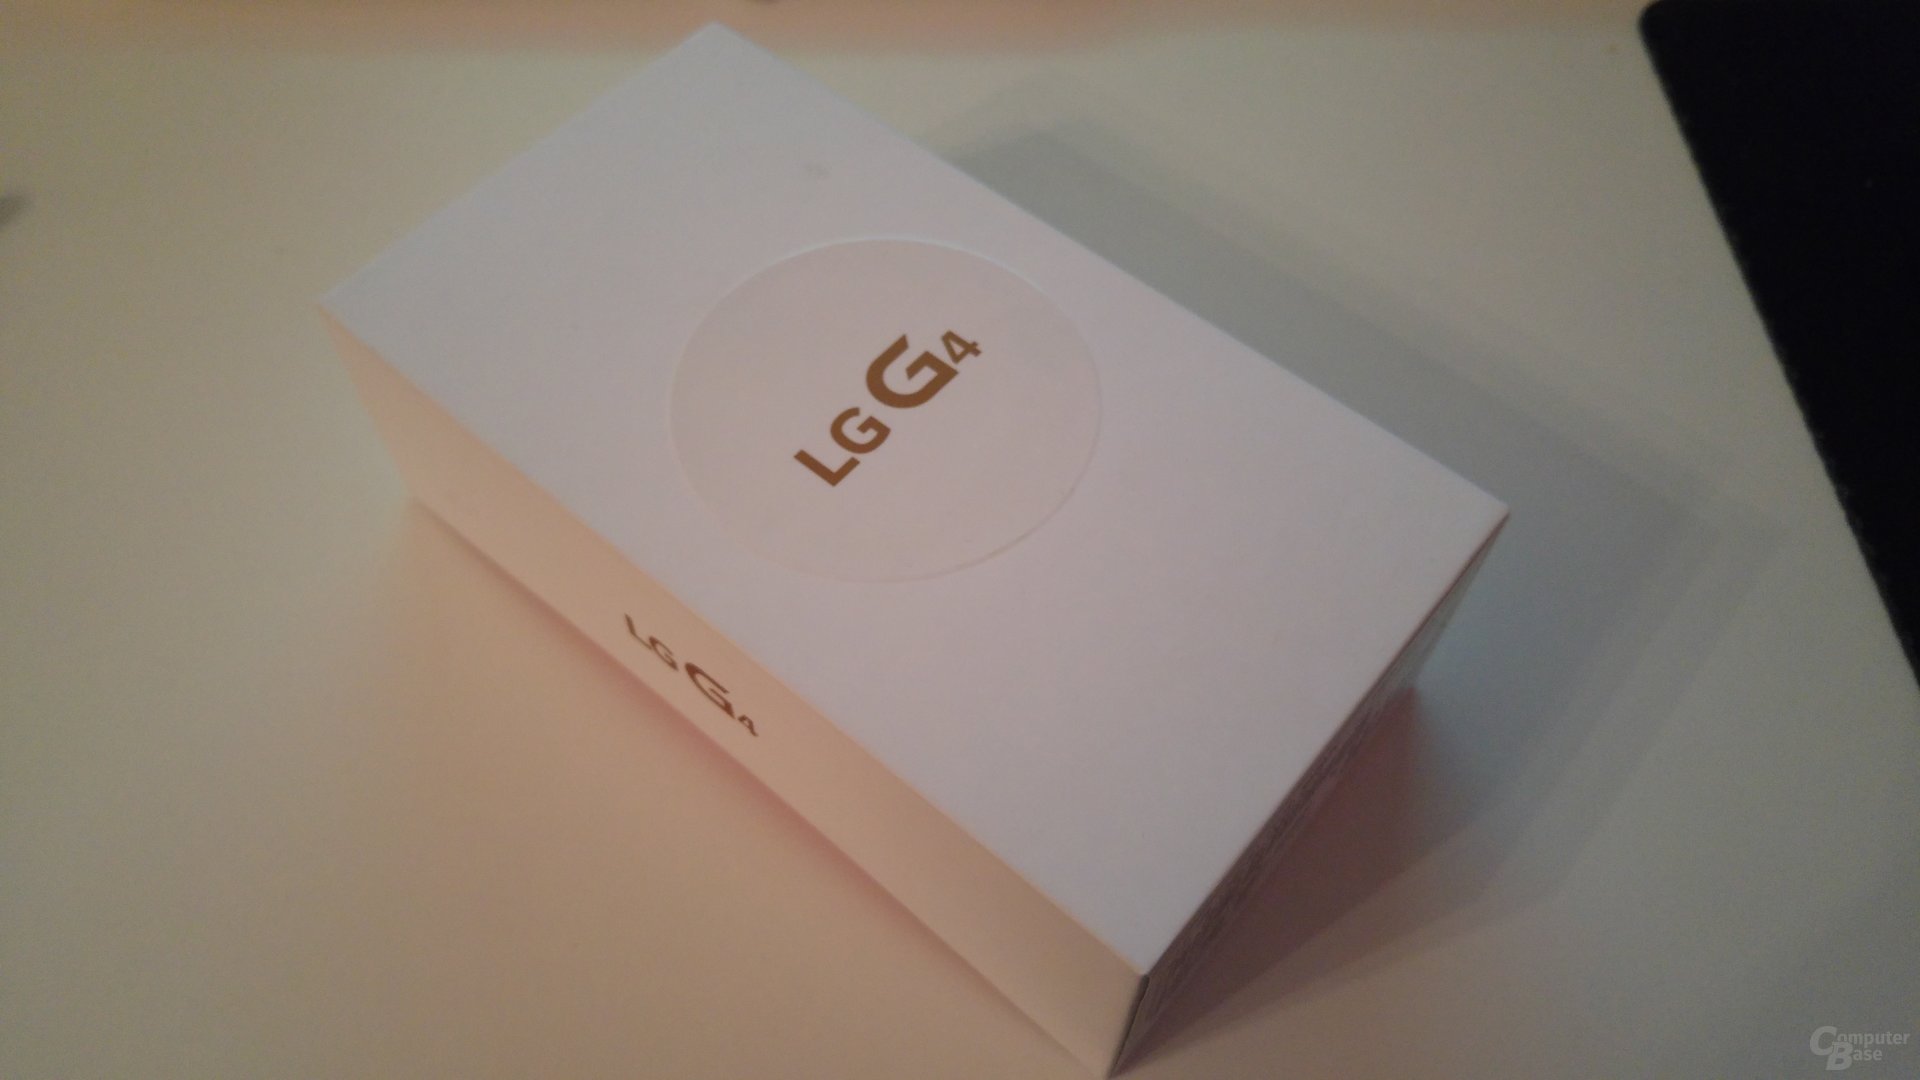 LG G4 – Kunstlicht